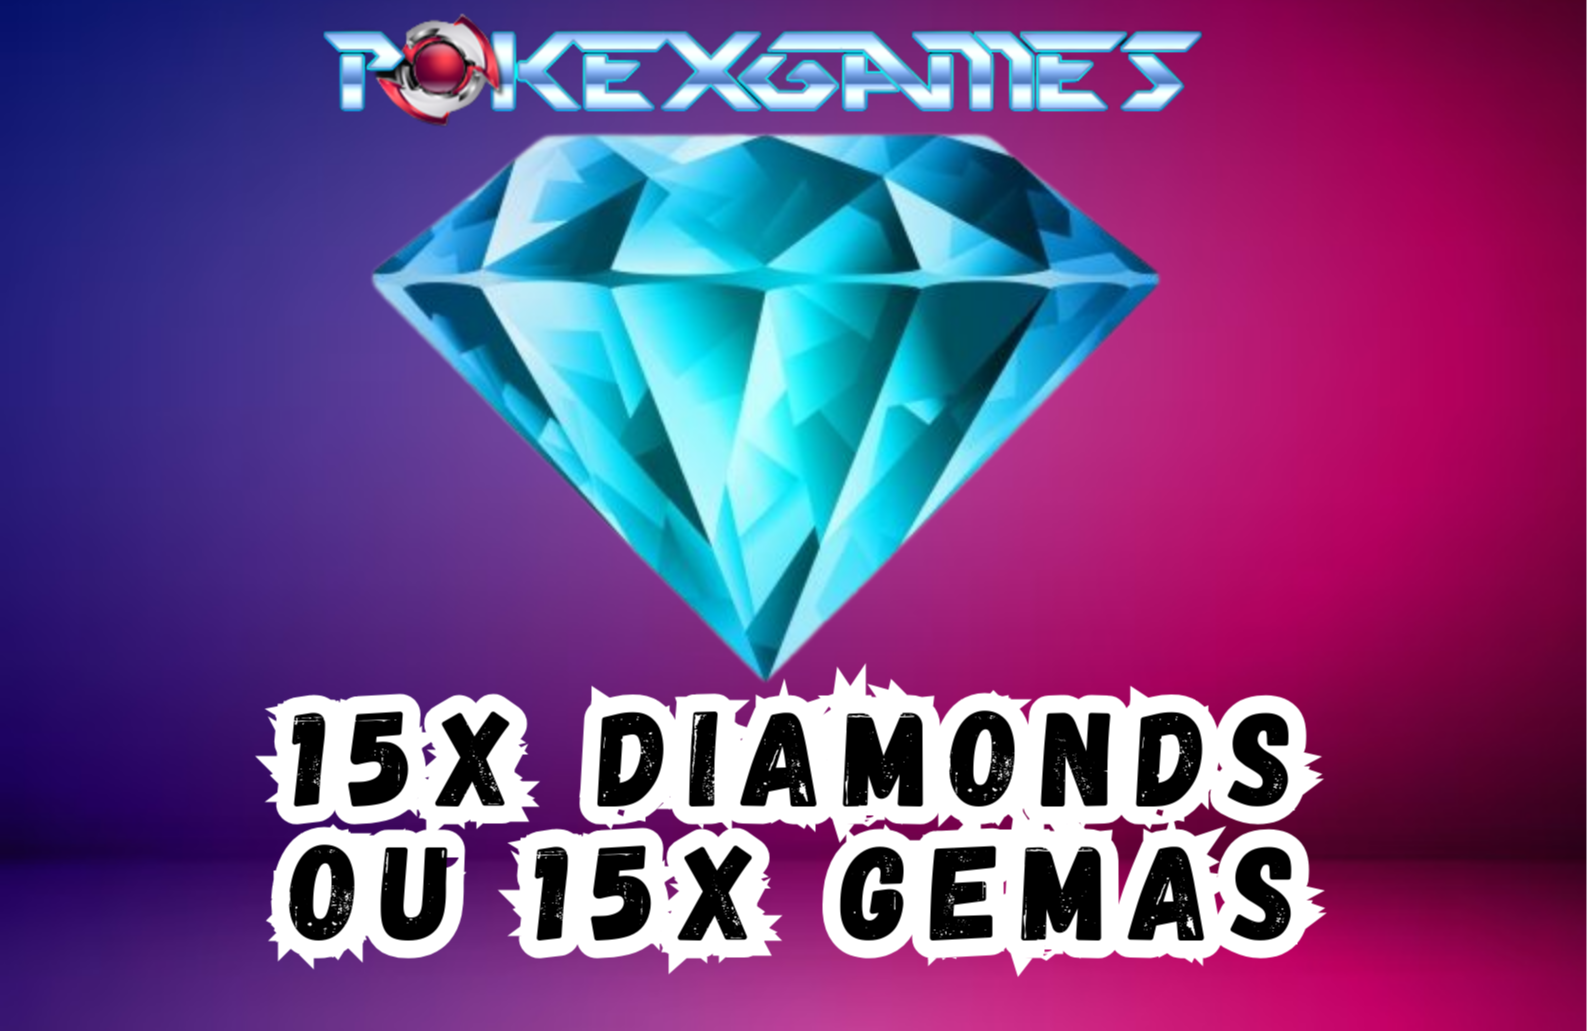 PokexGames Diamonds